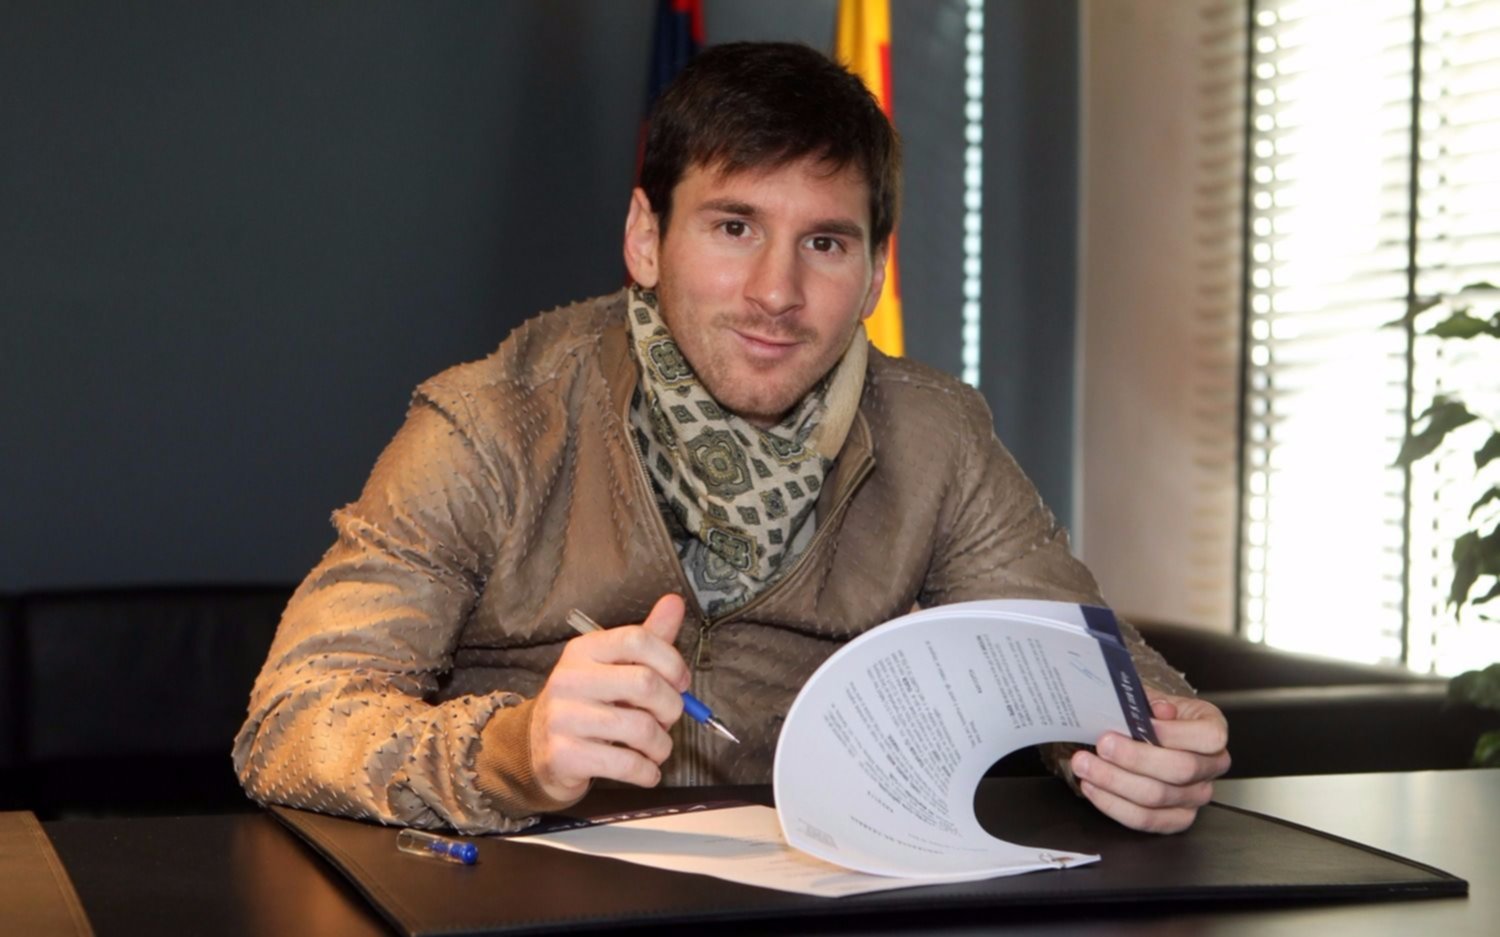 La renovación del contrato de Messi sigue dando que hablar